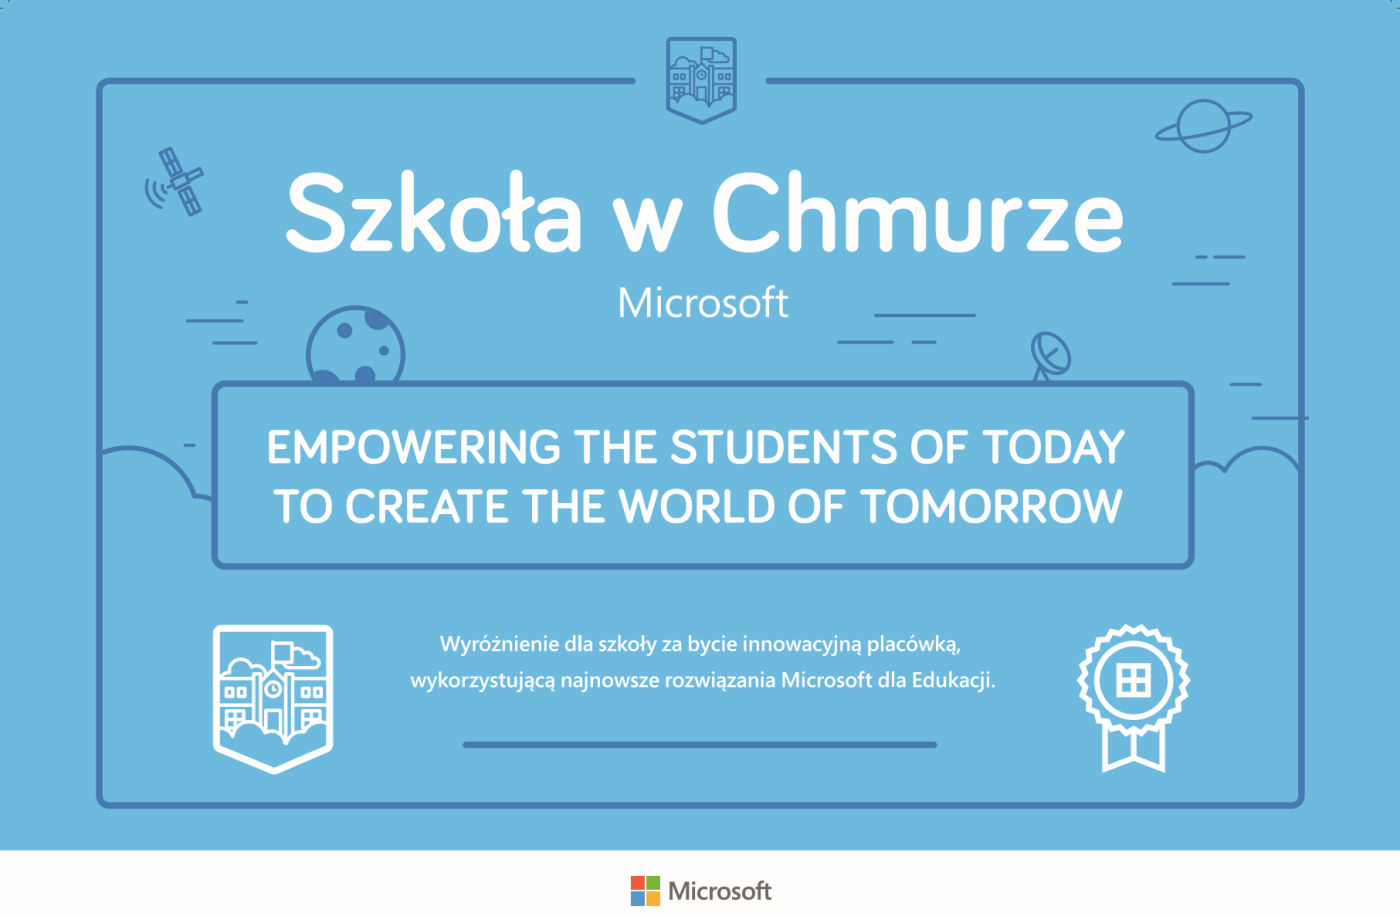 Wyróżnienie dla szkoły za bycie innowacyjną placówką, wykorzystującą najnowsze rozwiązania Microsoft dla Edukacji